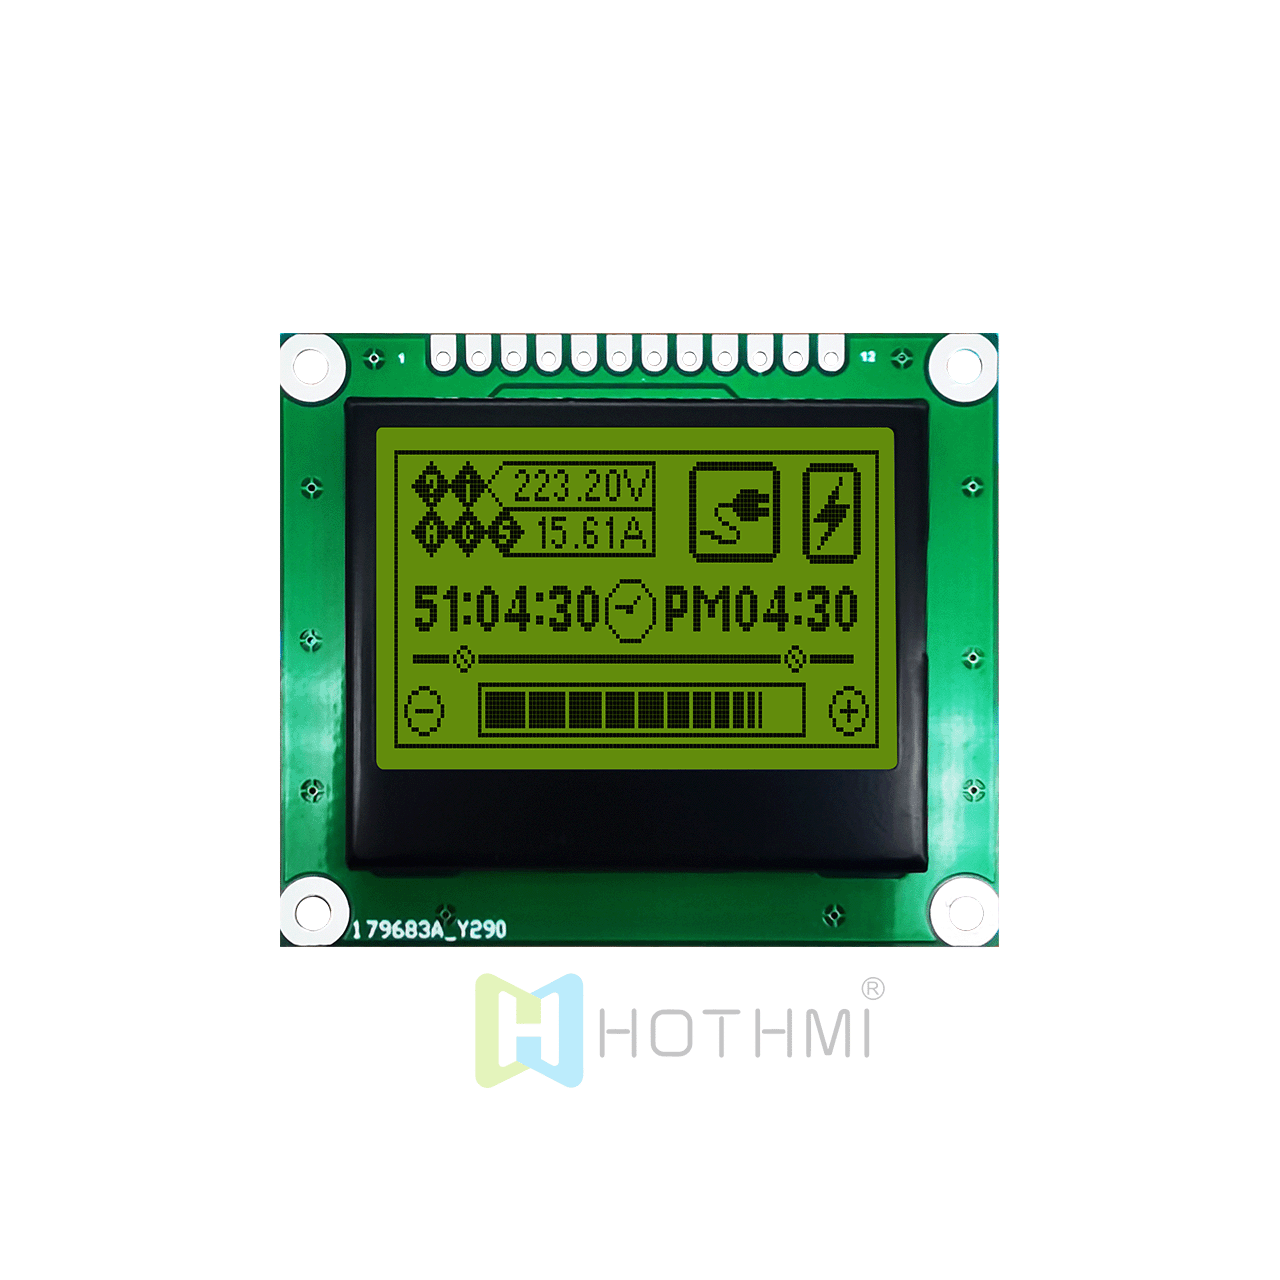 1.7英寸 LCD 128x64图形液晶显示屏 | ST7567 | SPI 接口 | 图形模块显示器，STN+ 黄绿背光 | 带数据表